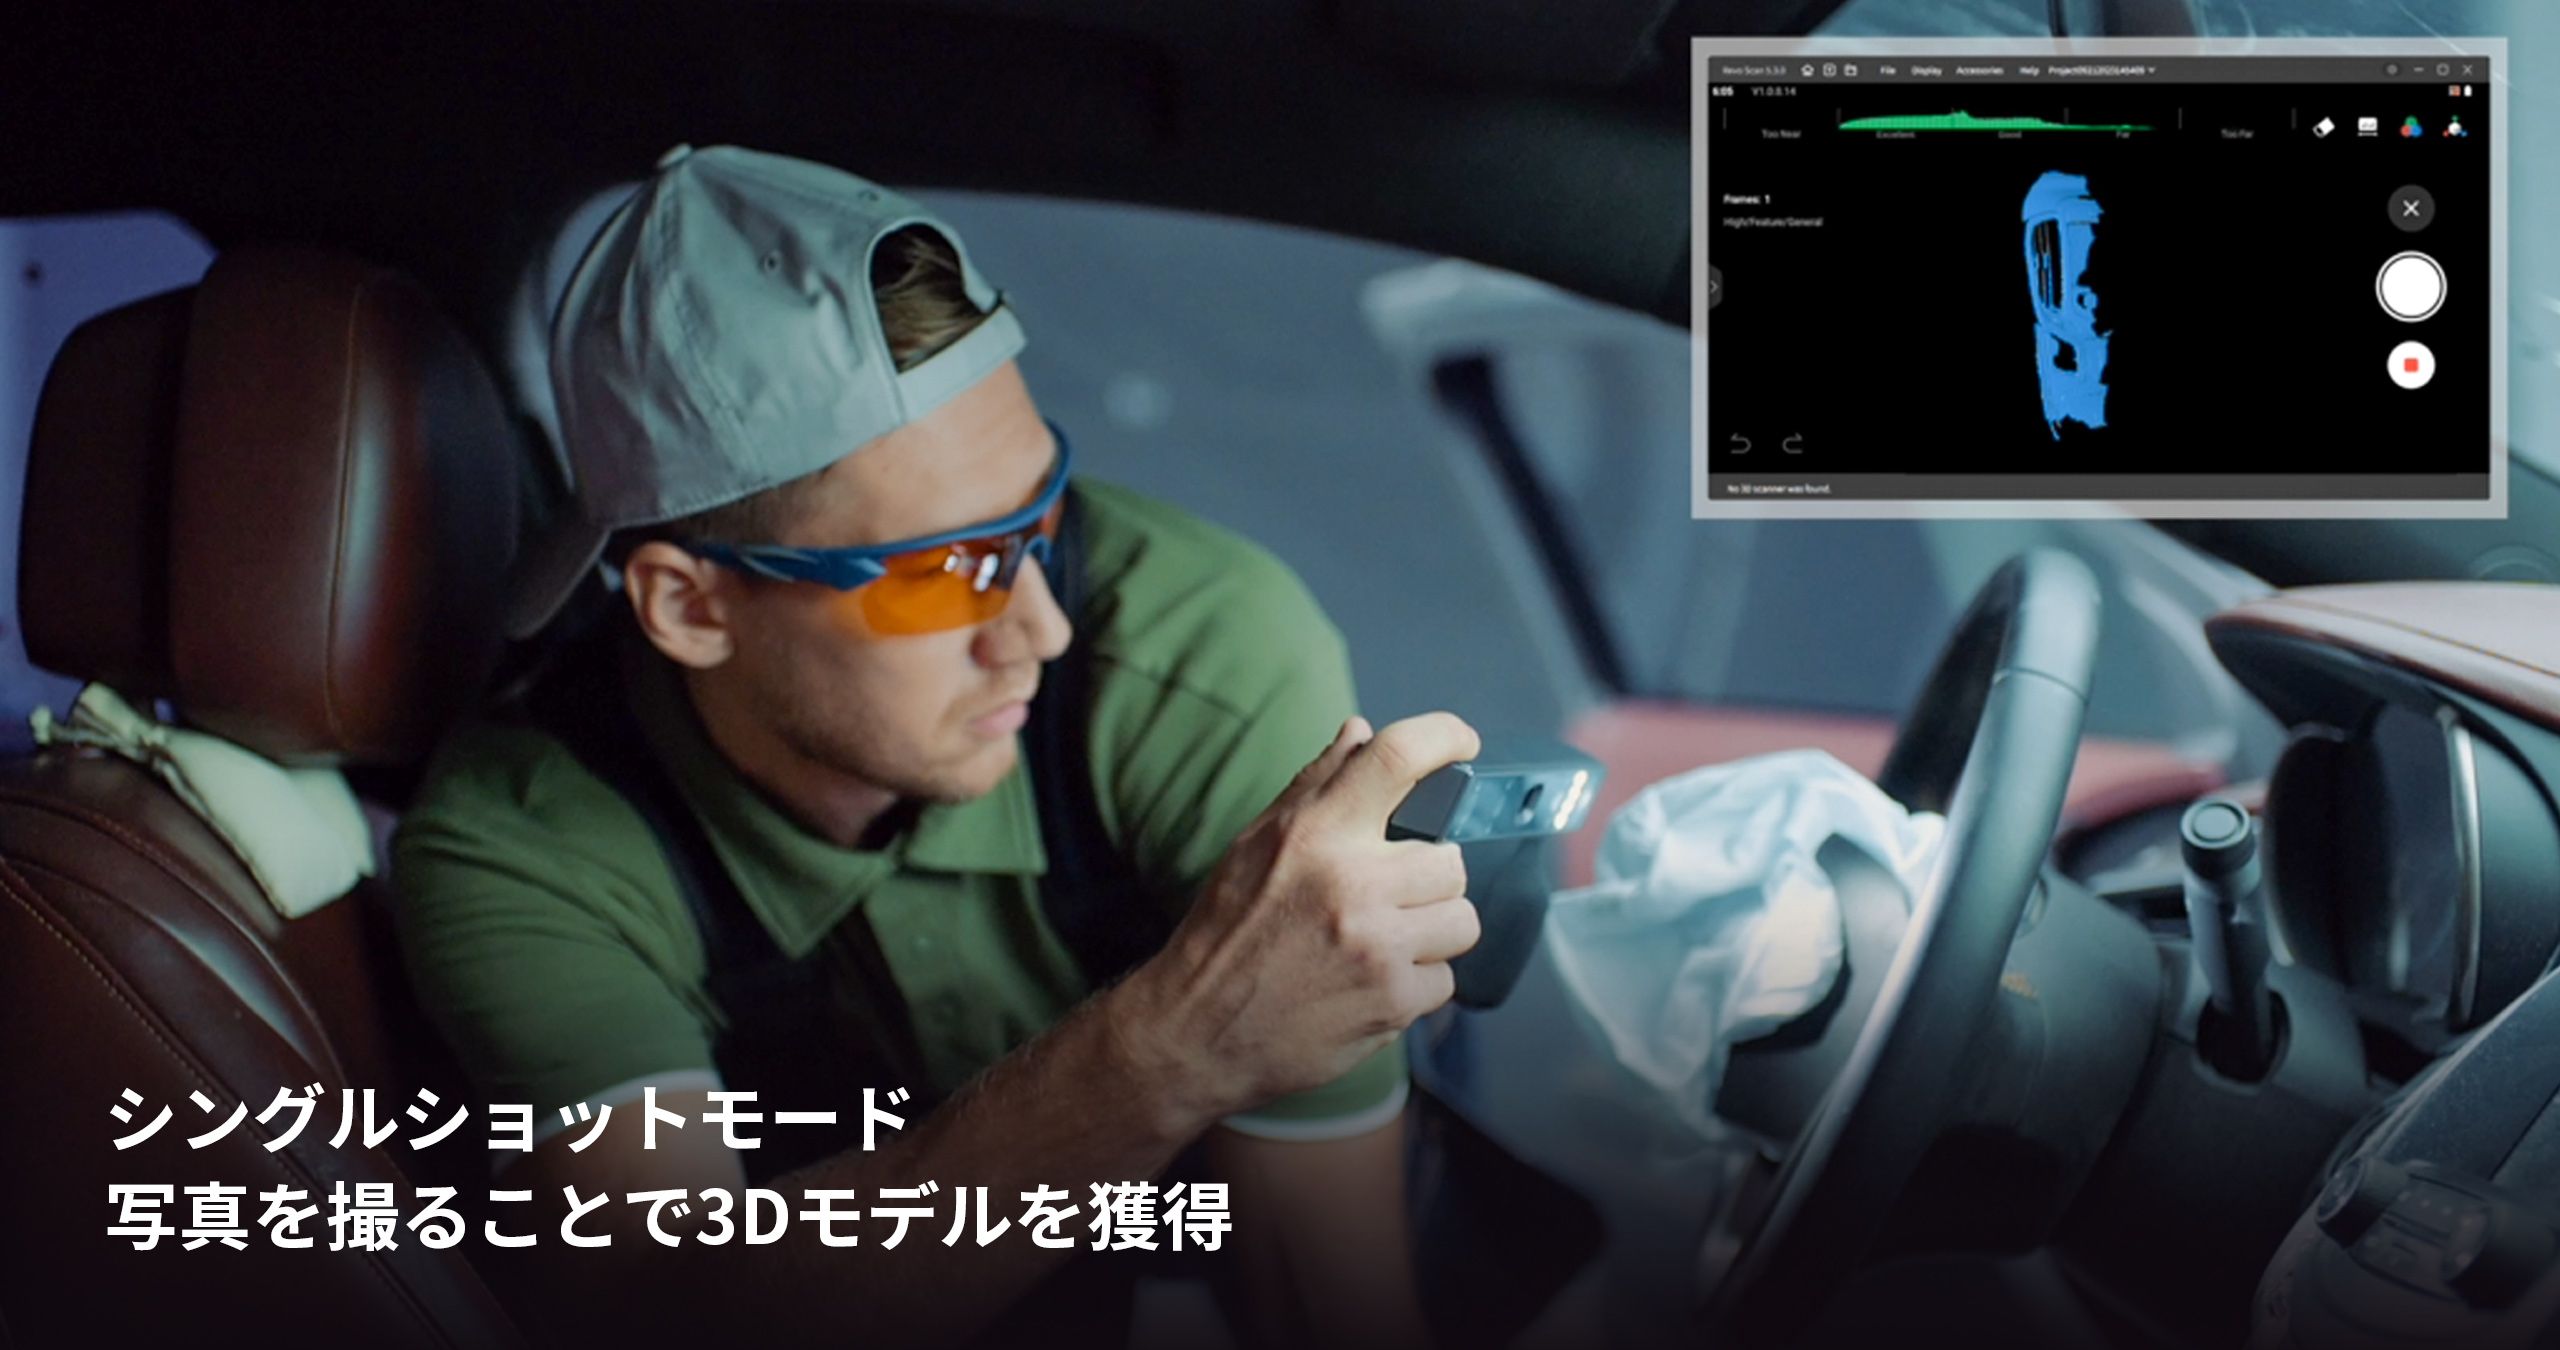 REVOPOINT MIRACO 3Dスキャナー - b8ta Japan